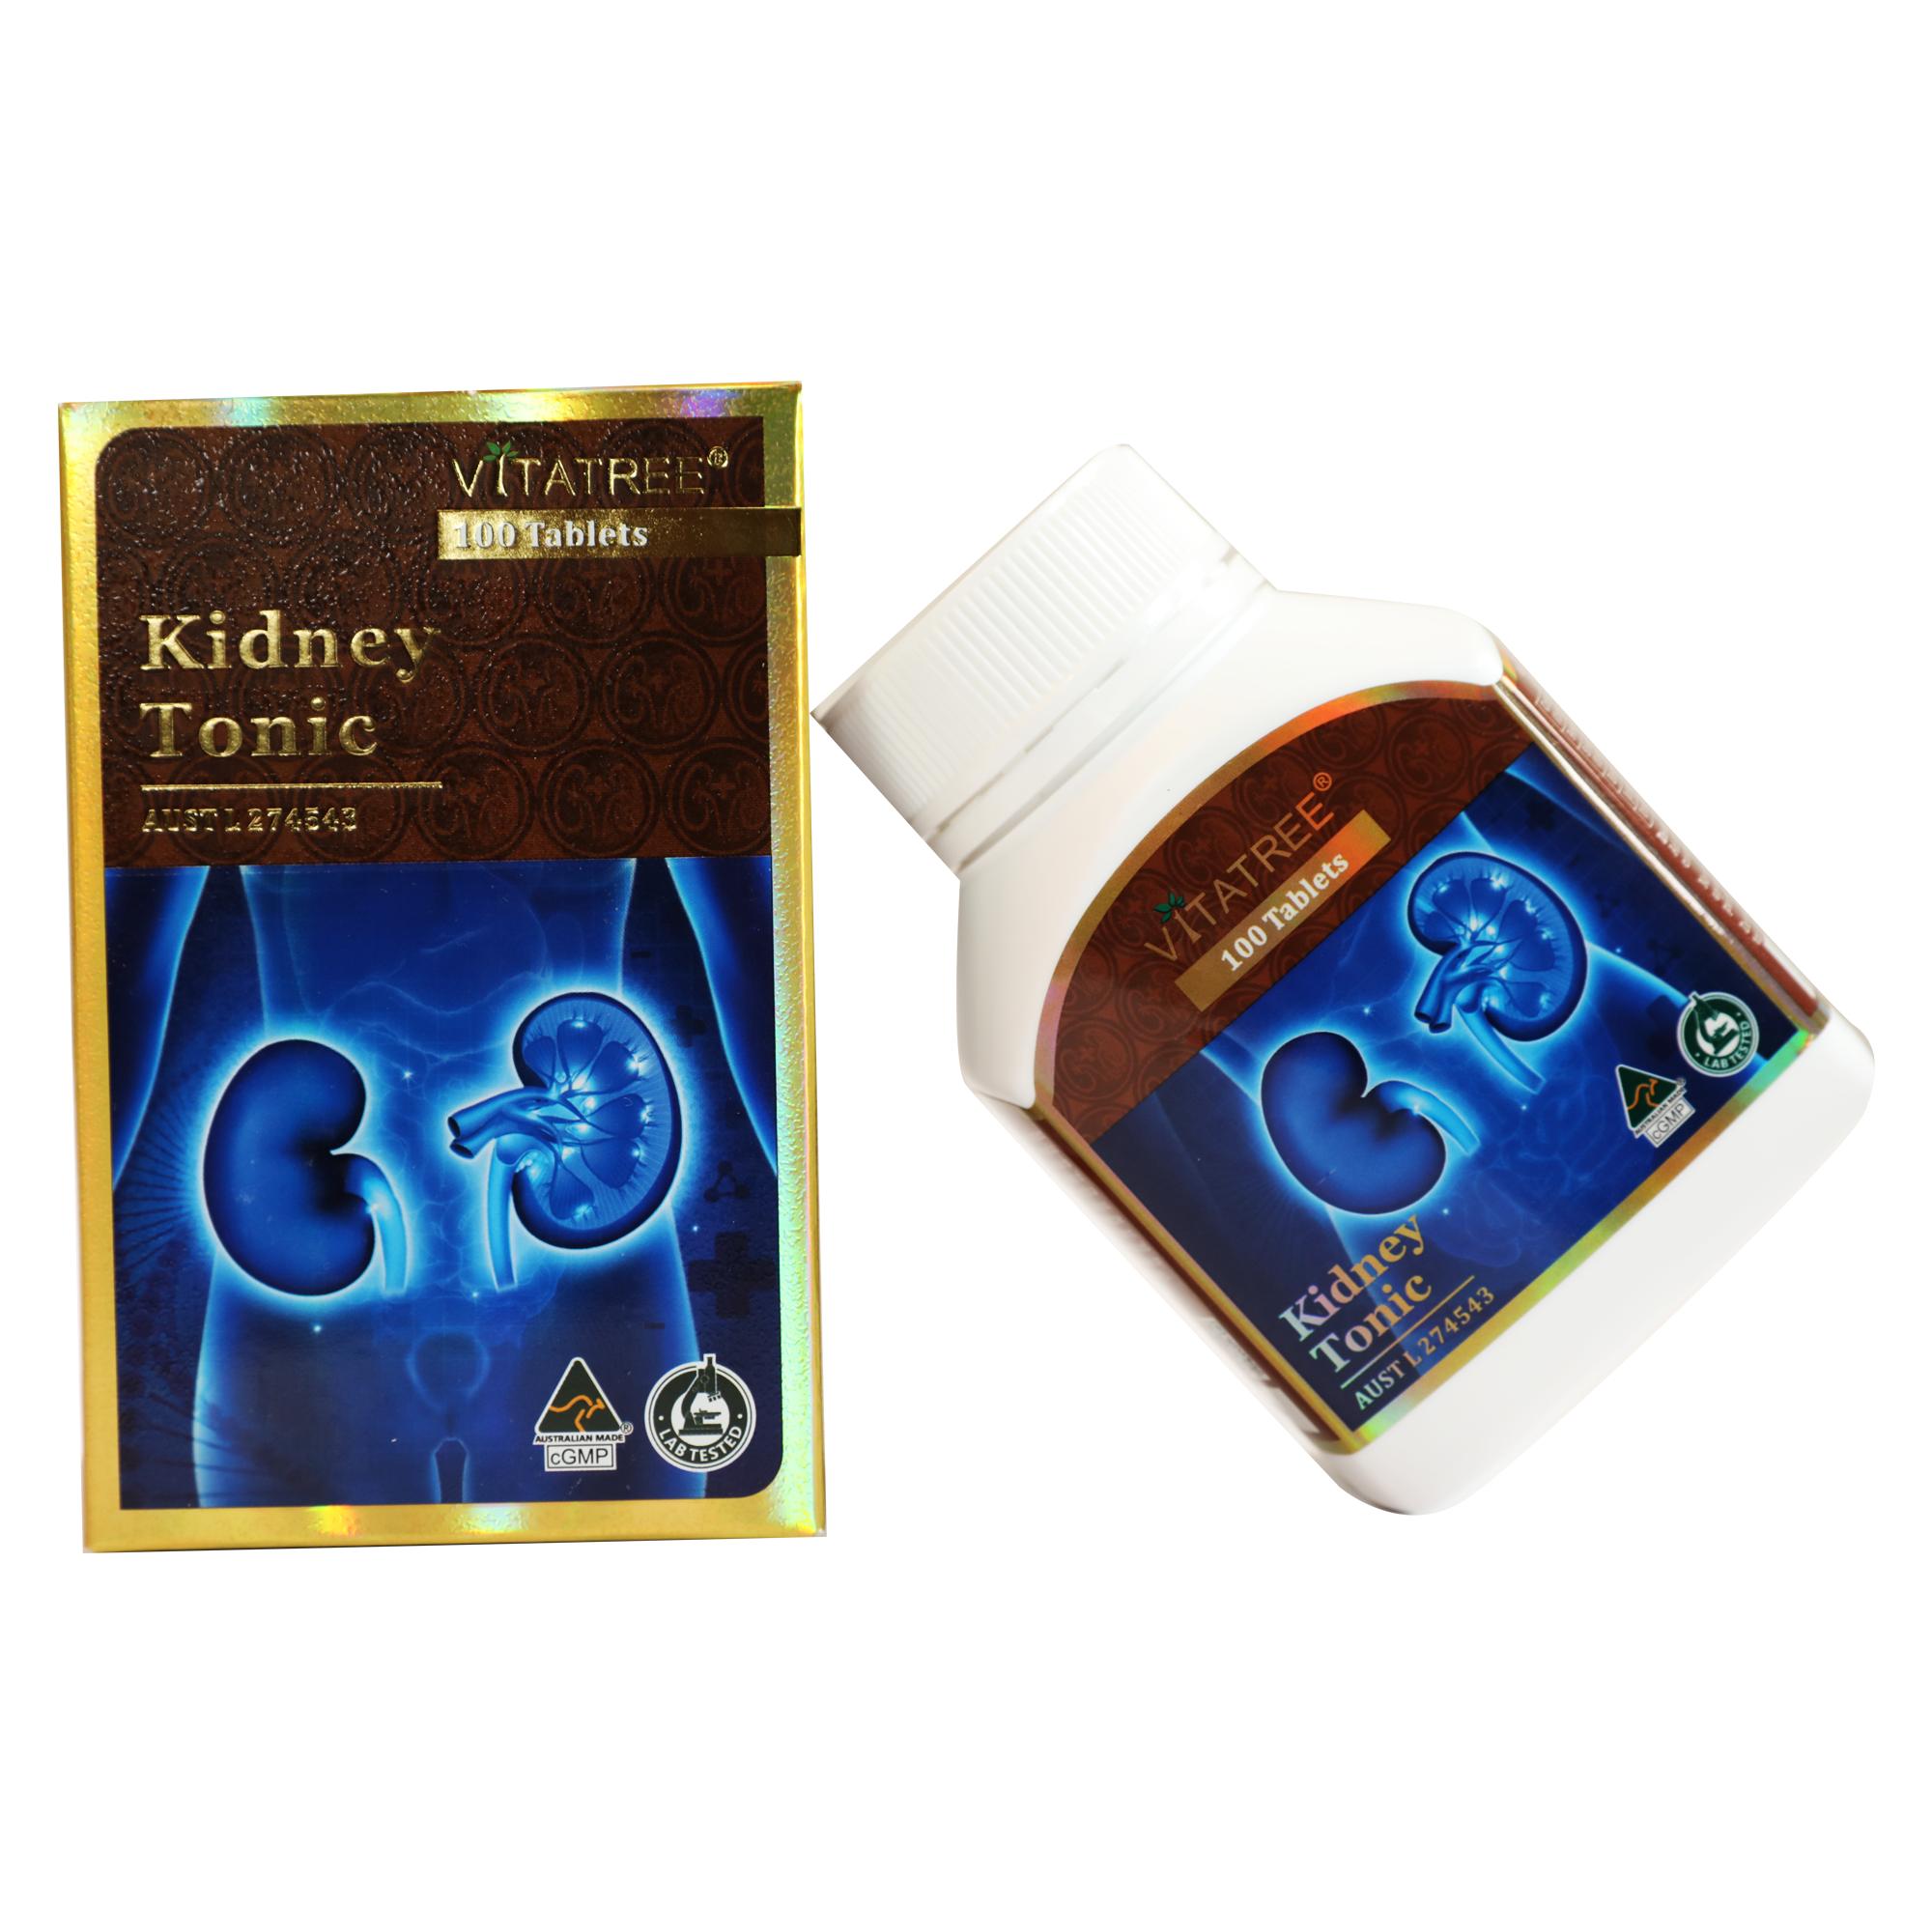 Hỗ Trợ Giải Độc Thận Kidney Tonic Vitatree 100 capsules